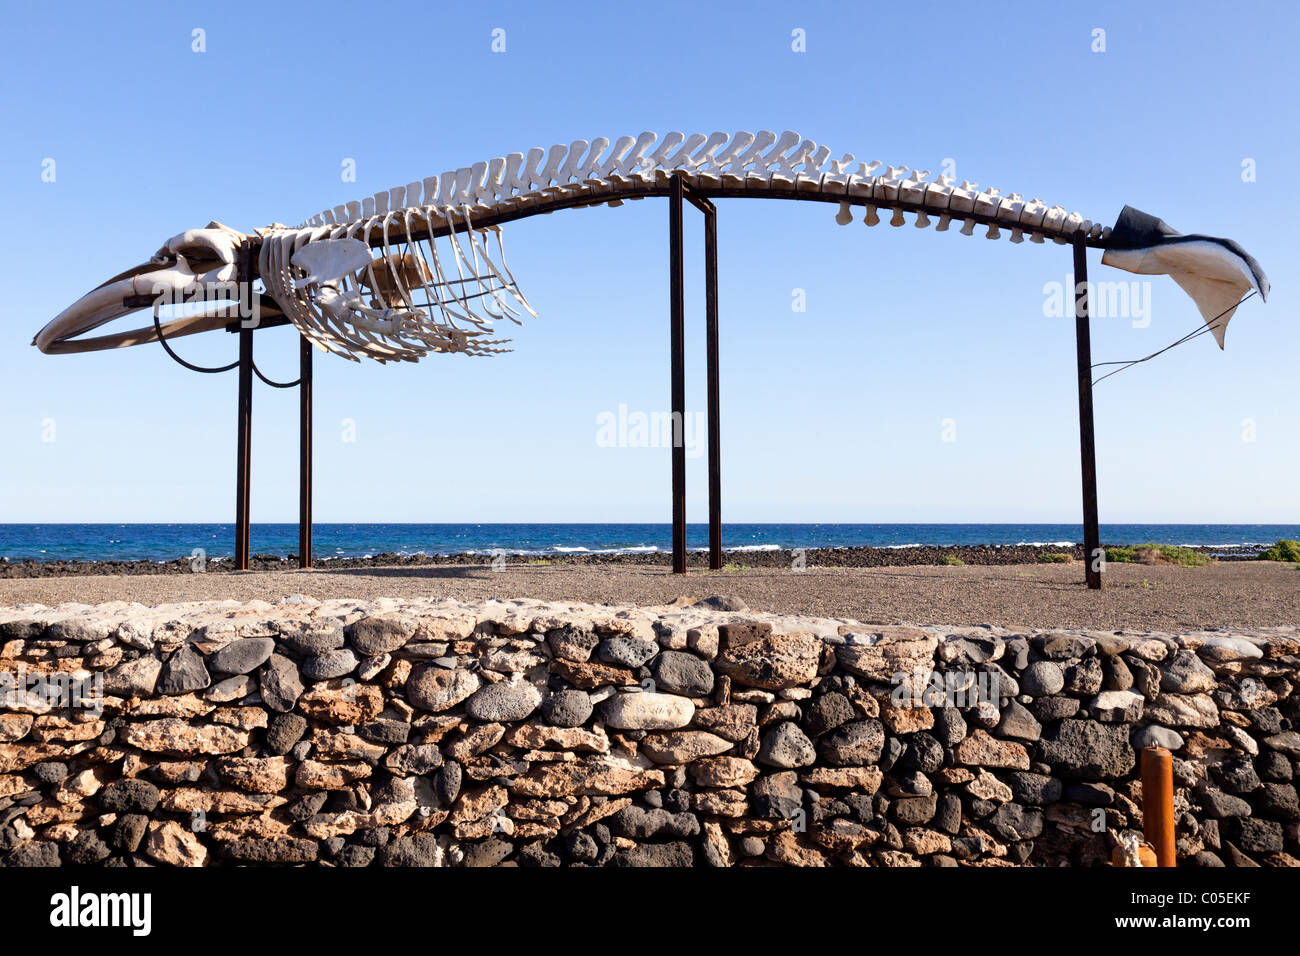 Le squelette d'un rorqual commun de 19 mètres de long à la baleine Fuerteventura Le musée du sel sur l'île canarienne de Fuerteventura Banque D'Images